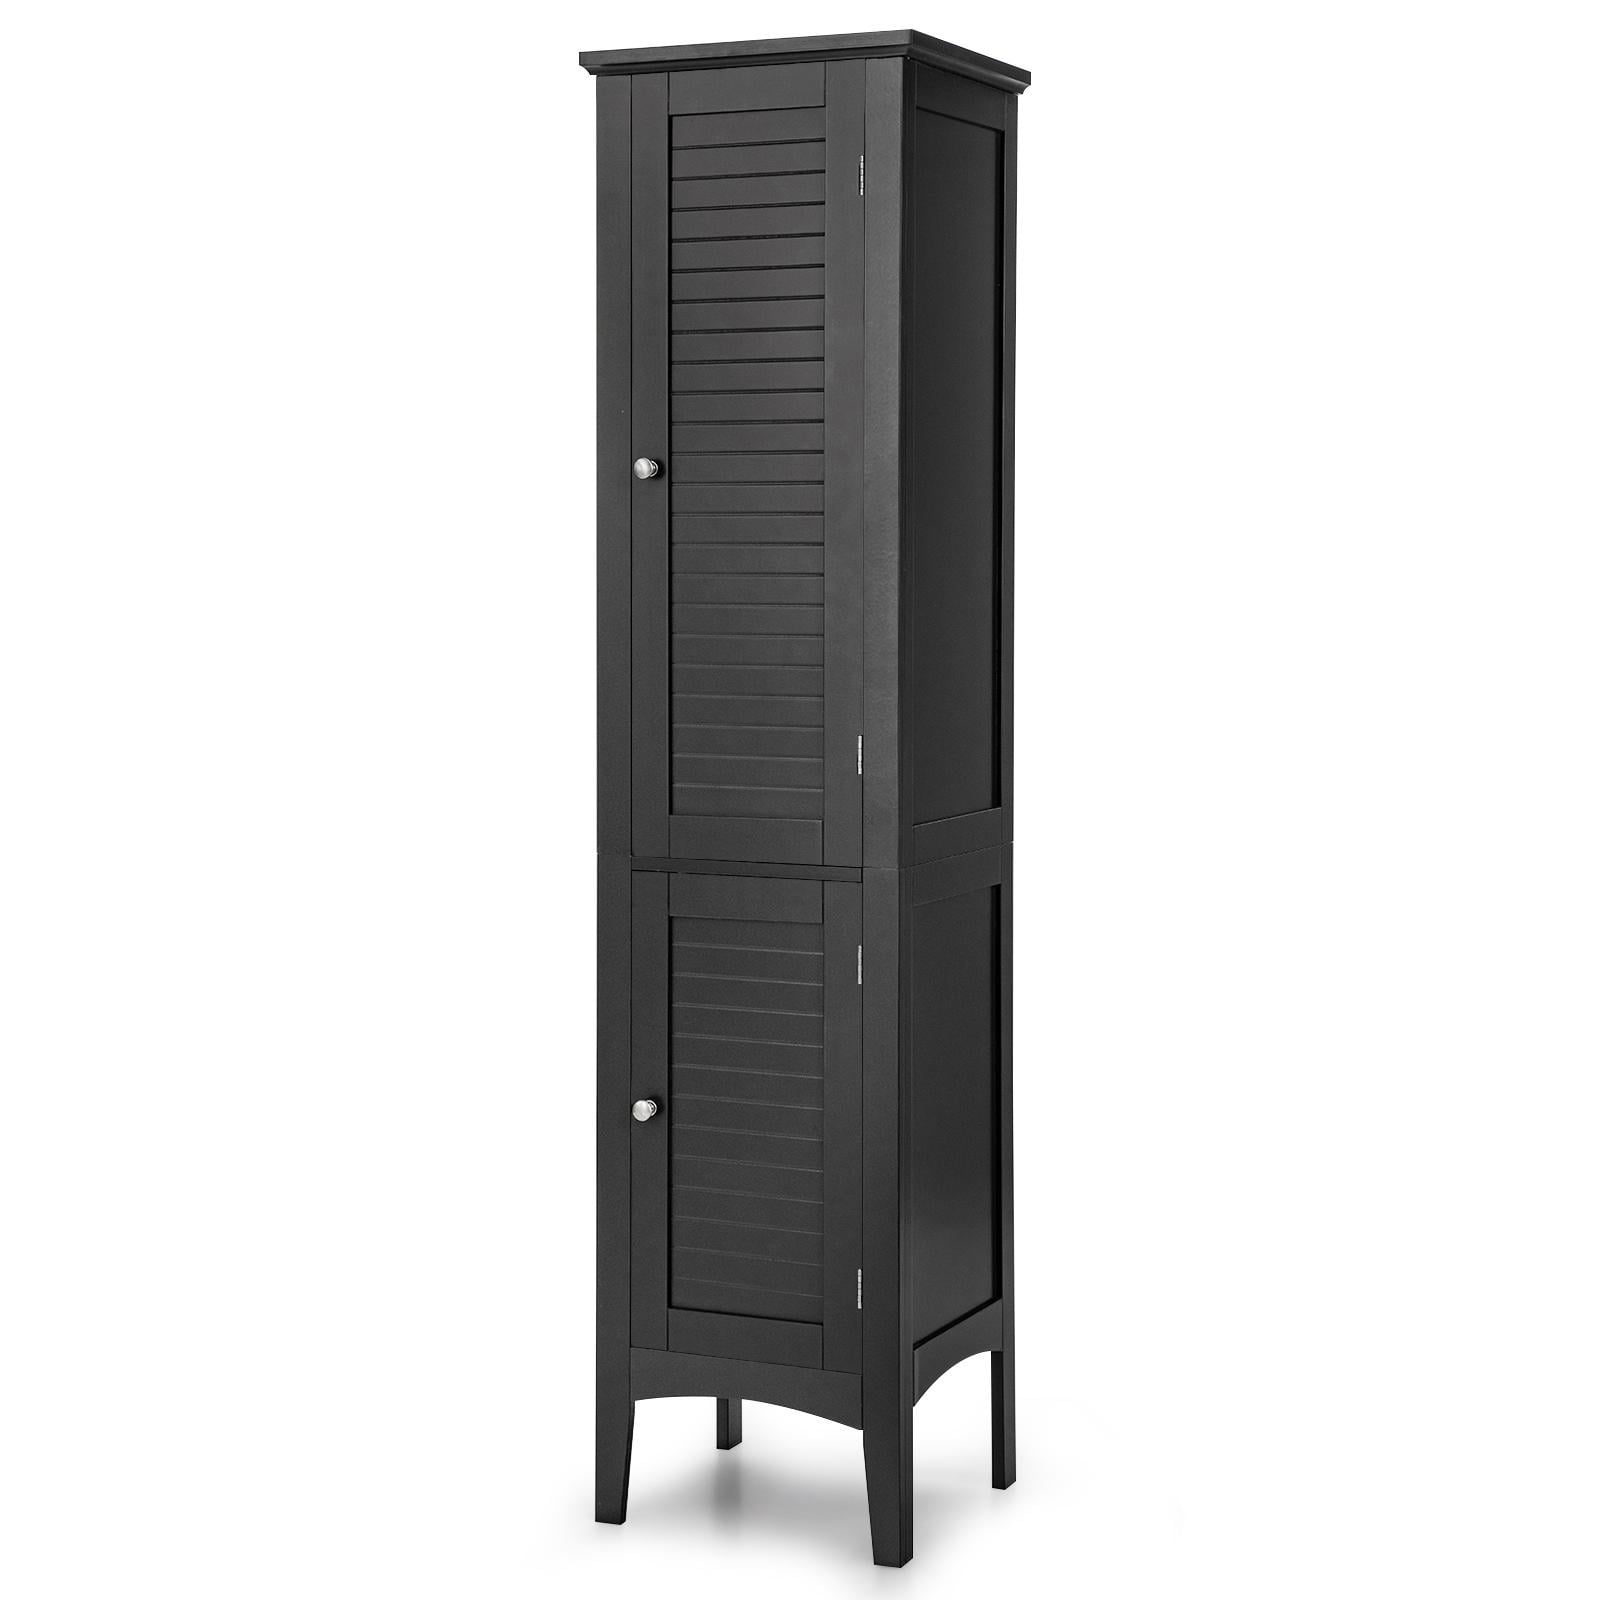 Tall Bathroom Storage Cabinet, Freestanding Linen Tower Slim Organizer,  White, 1 Unit - Gerbes Super Markets